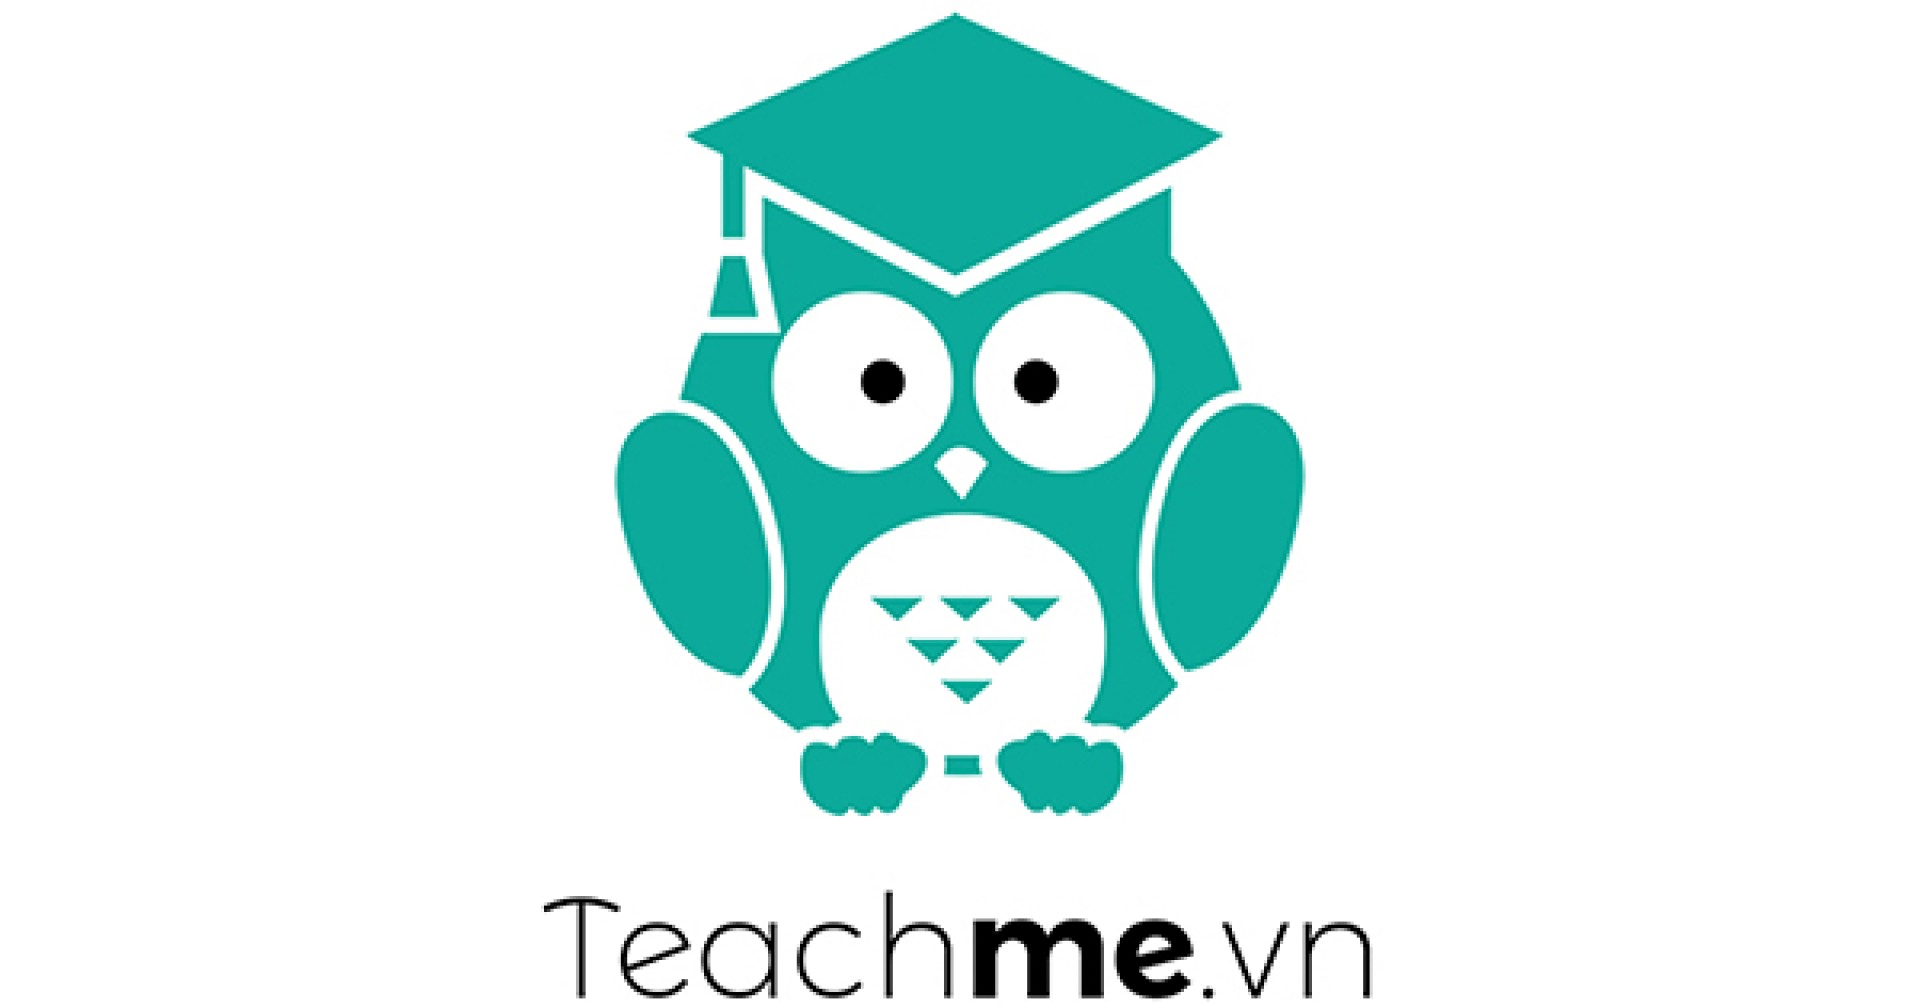 TeachMe.vn – Tìm giáo viên dạy kèm của bạn một cách dễ dàng